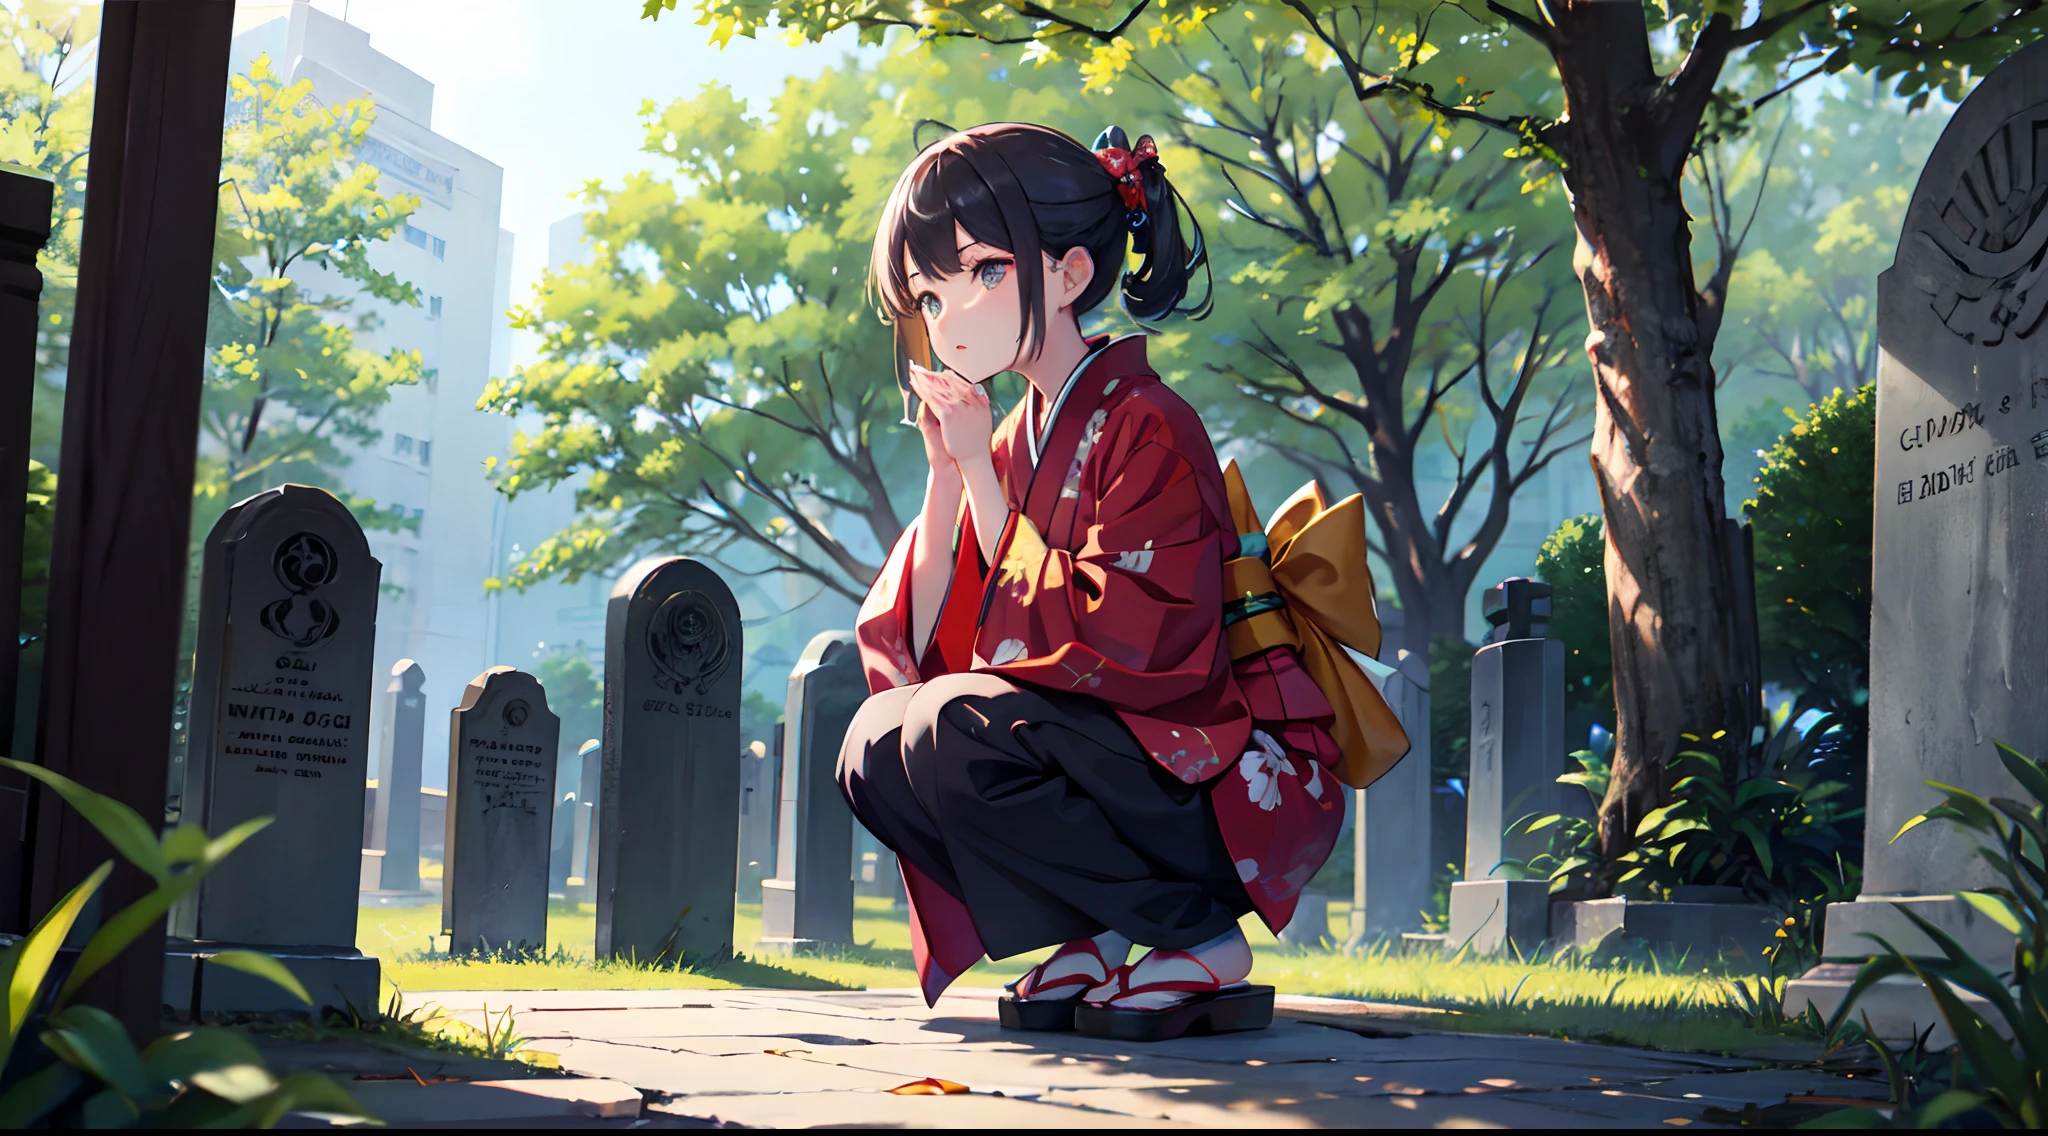 Garota de quimono、Agachamento e mãos juntas、cemitério、O outro lado